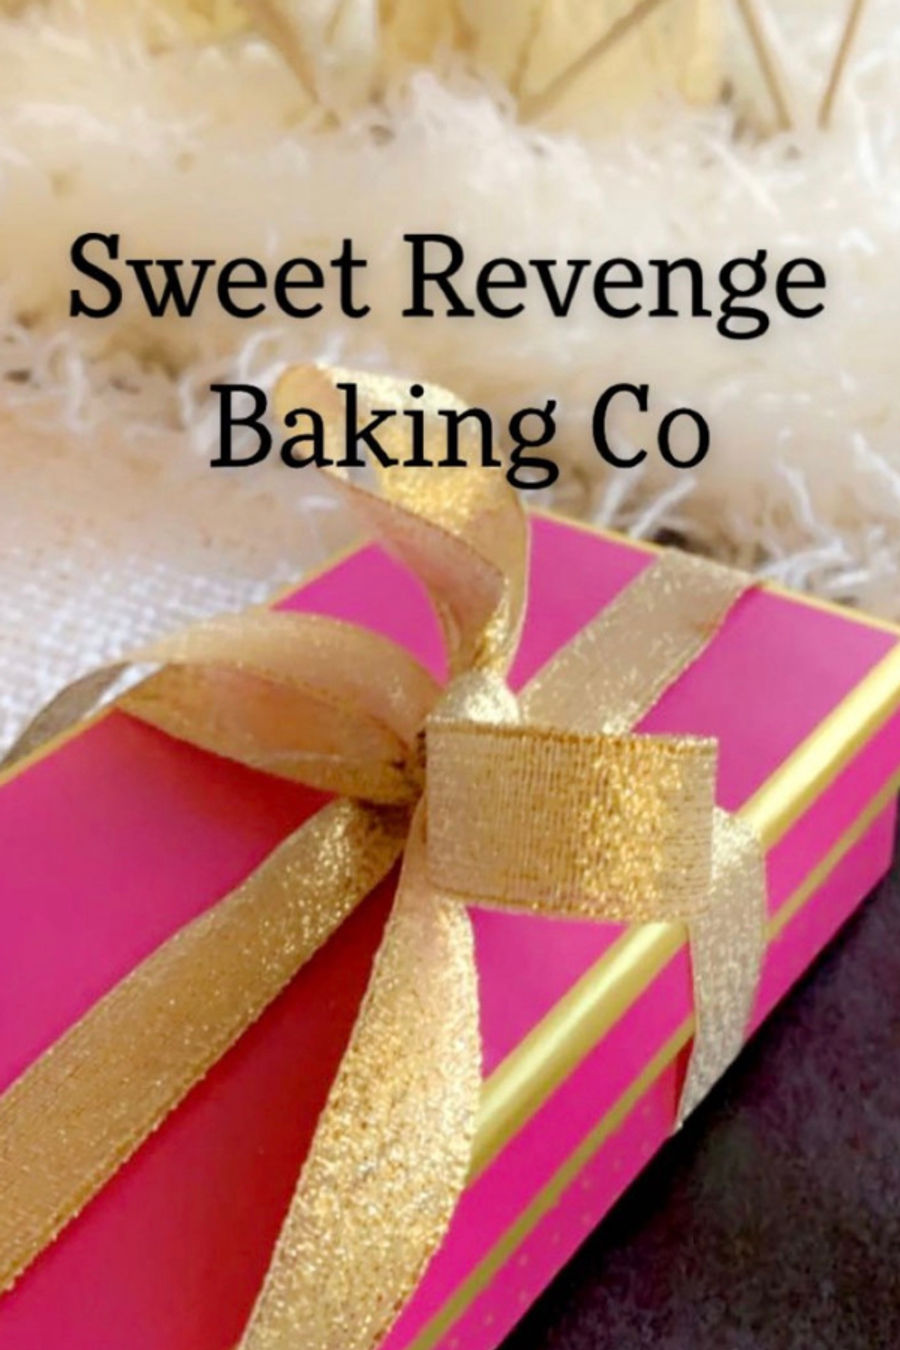 Sweet Revenge Baking Co